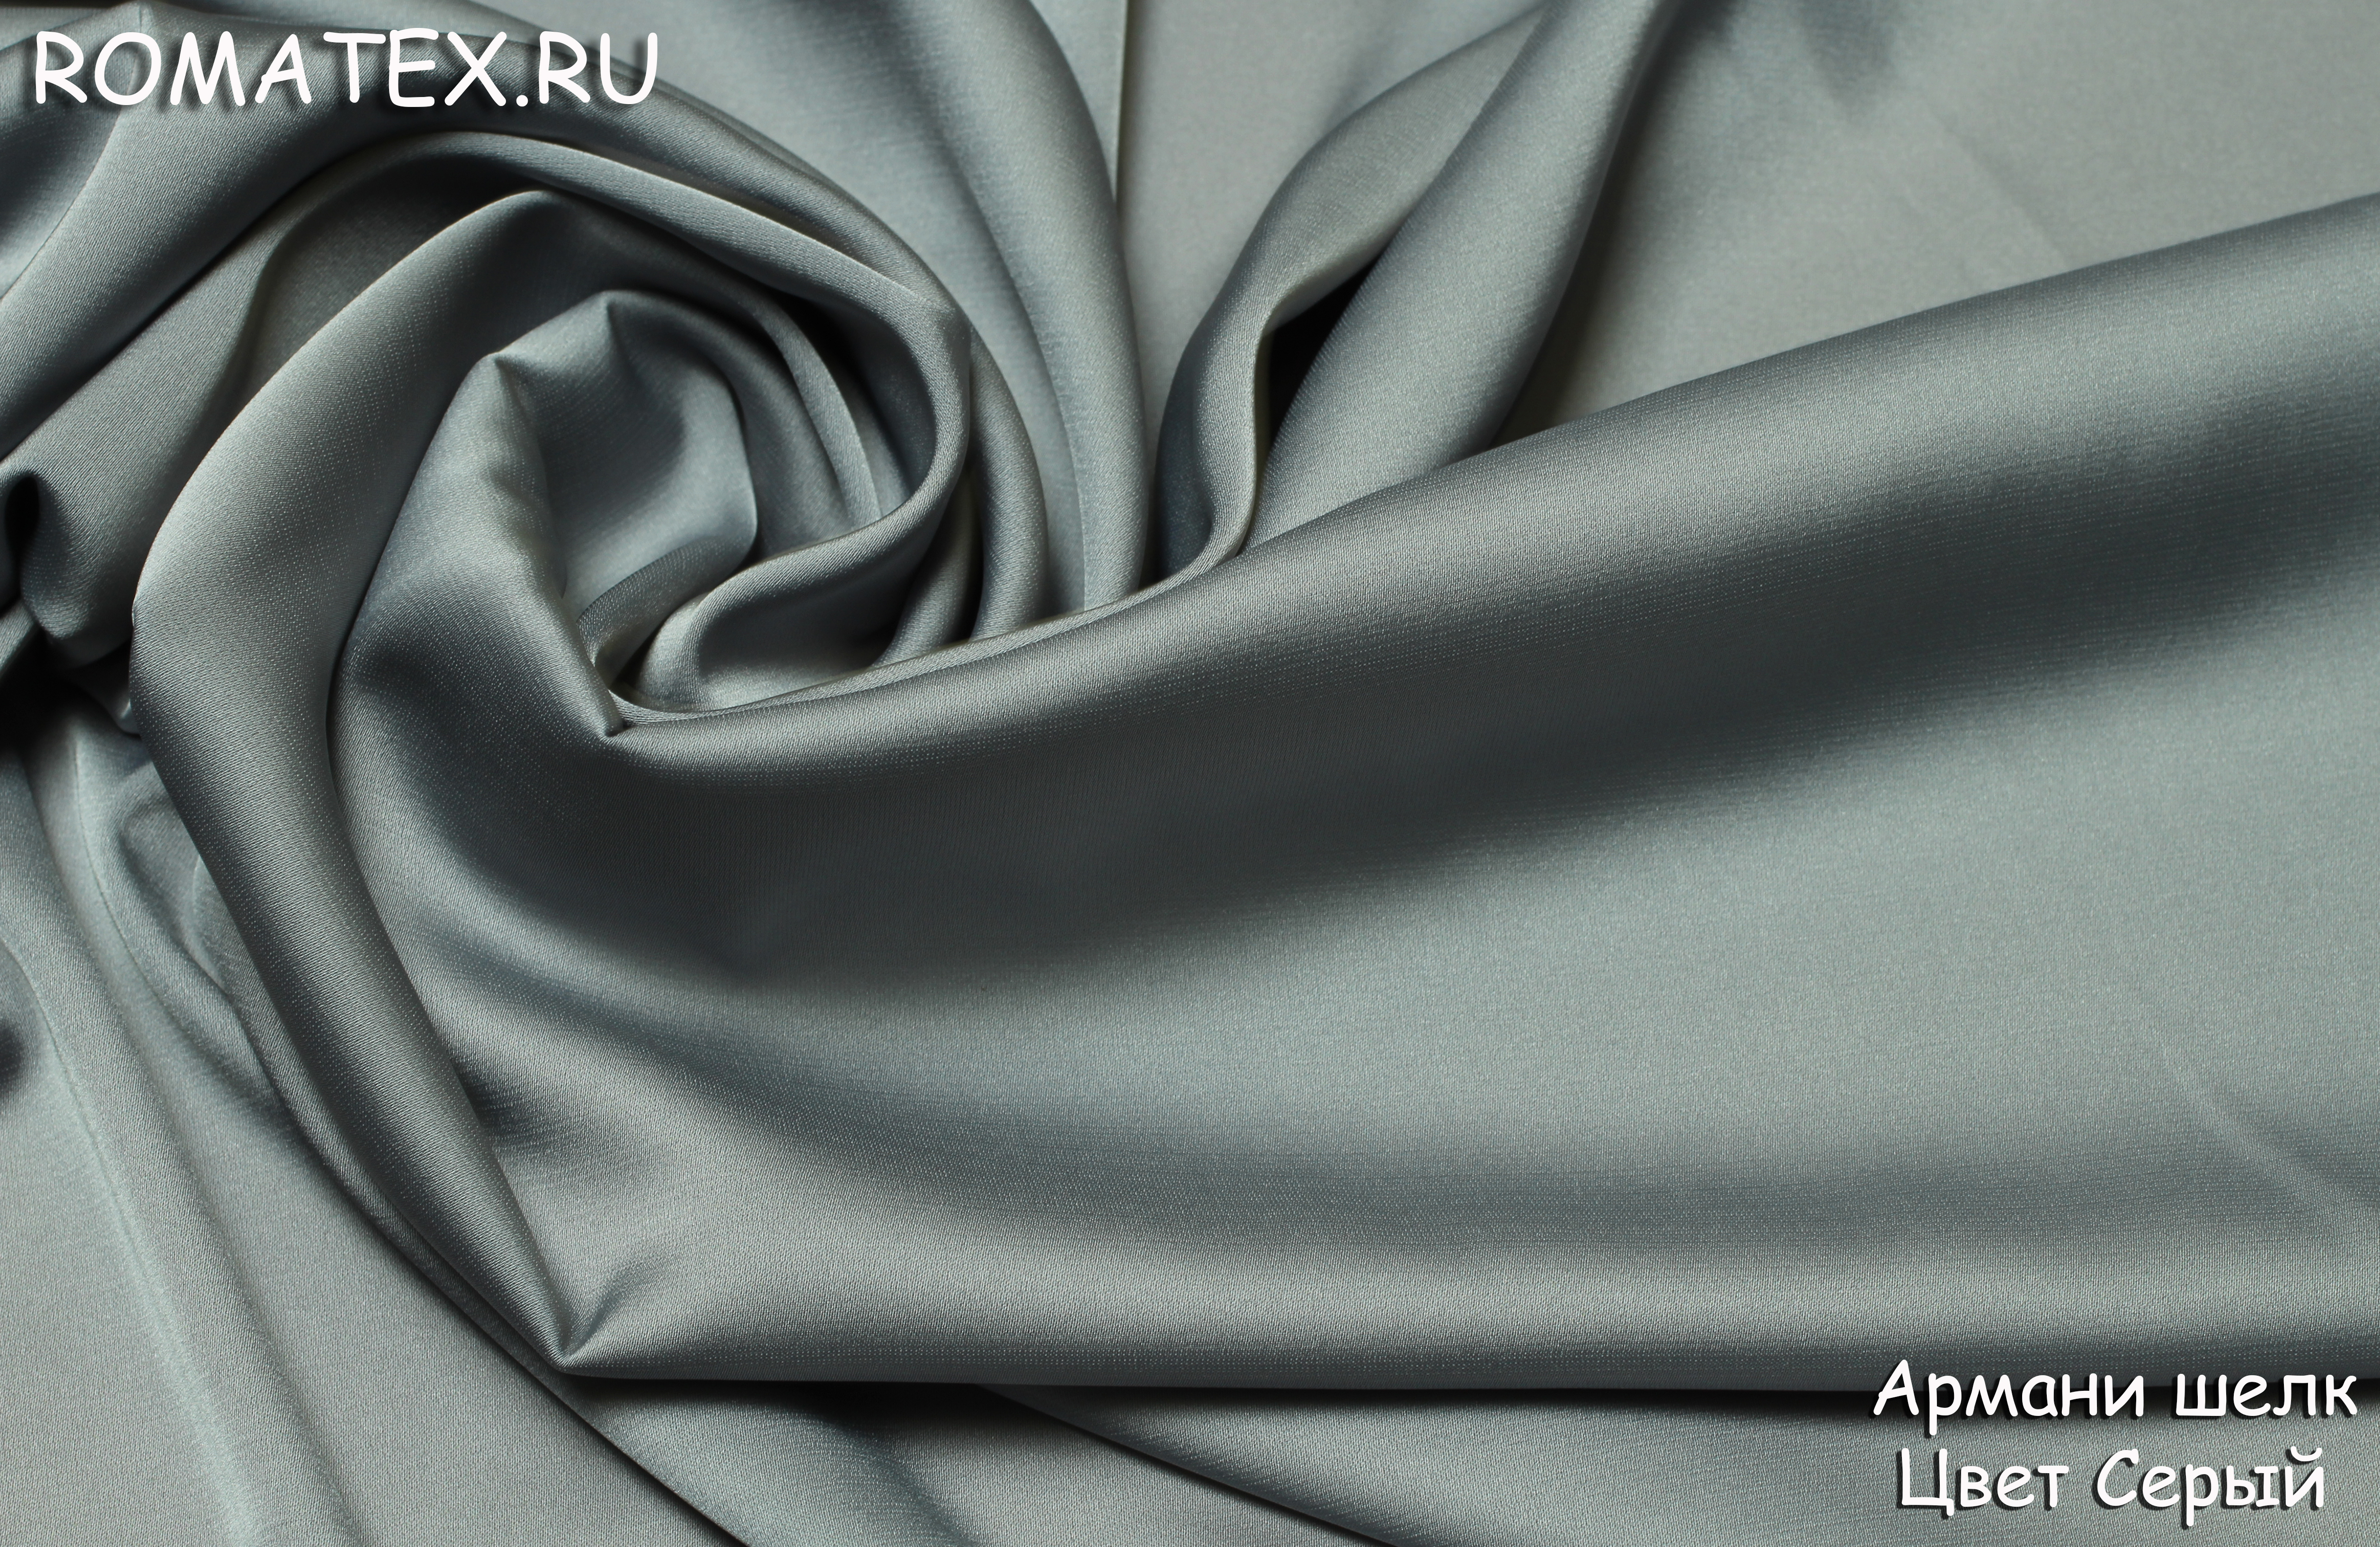 Ткань Армани шелк цвет серый - купить в магазине Роматекс